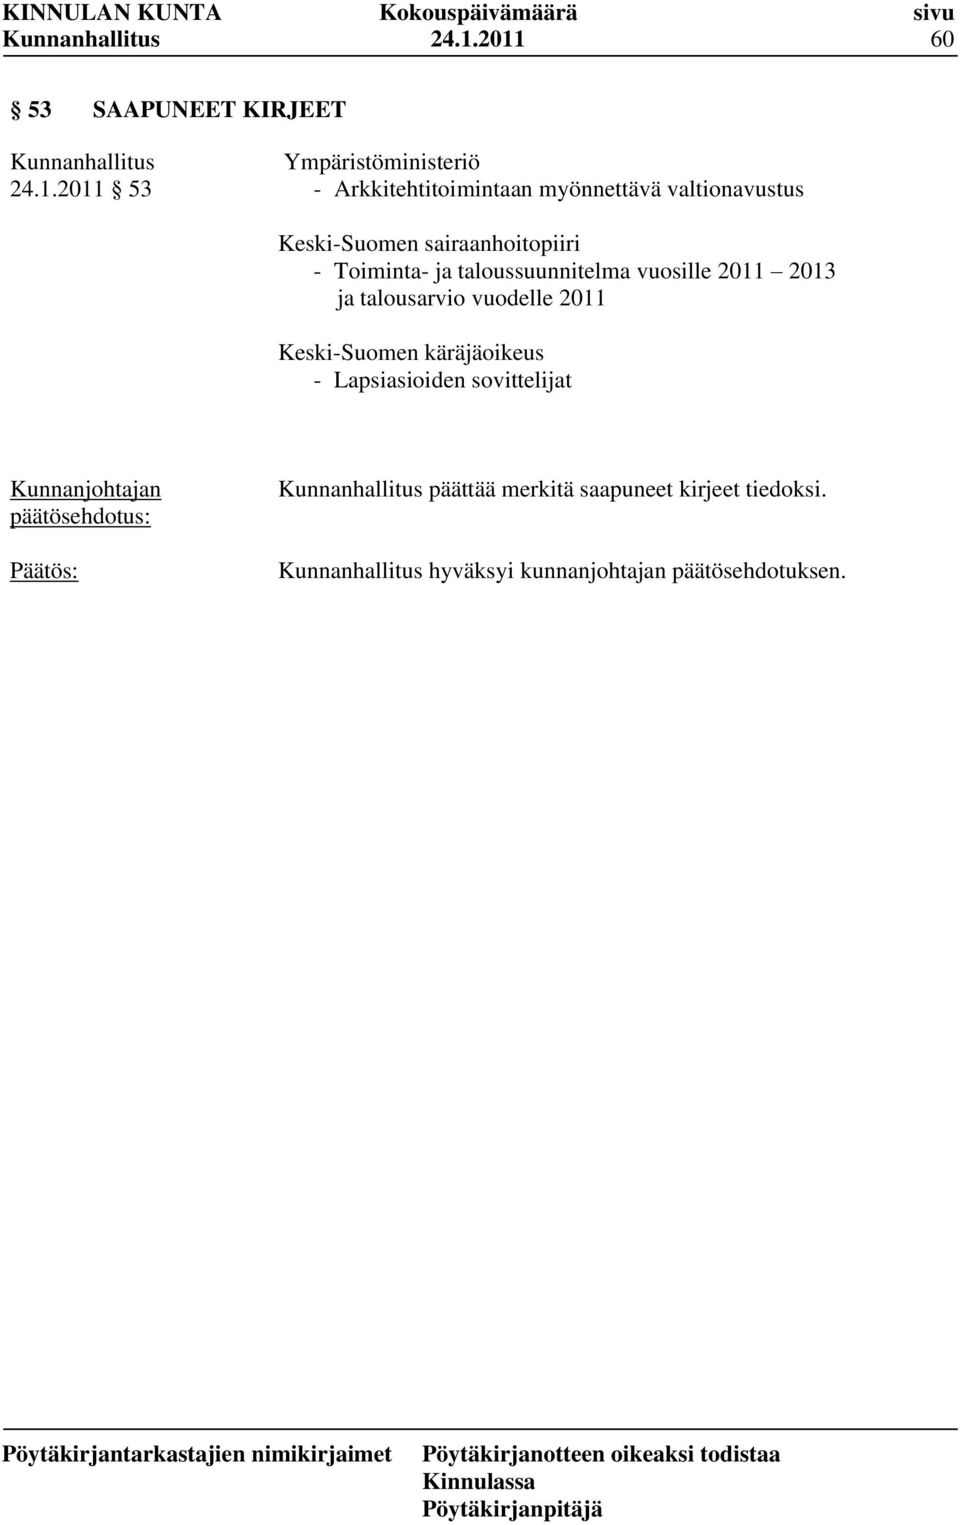 vuosille 2011 2013 ja talousarvio vuodelle 2011 Keski-Suomen käräjäoikeus - Lapsiasioiden